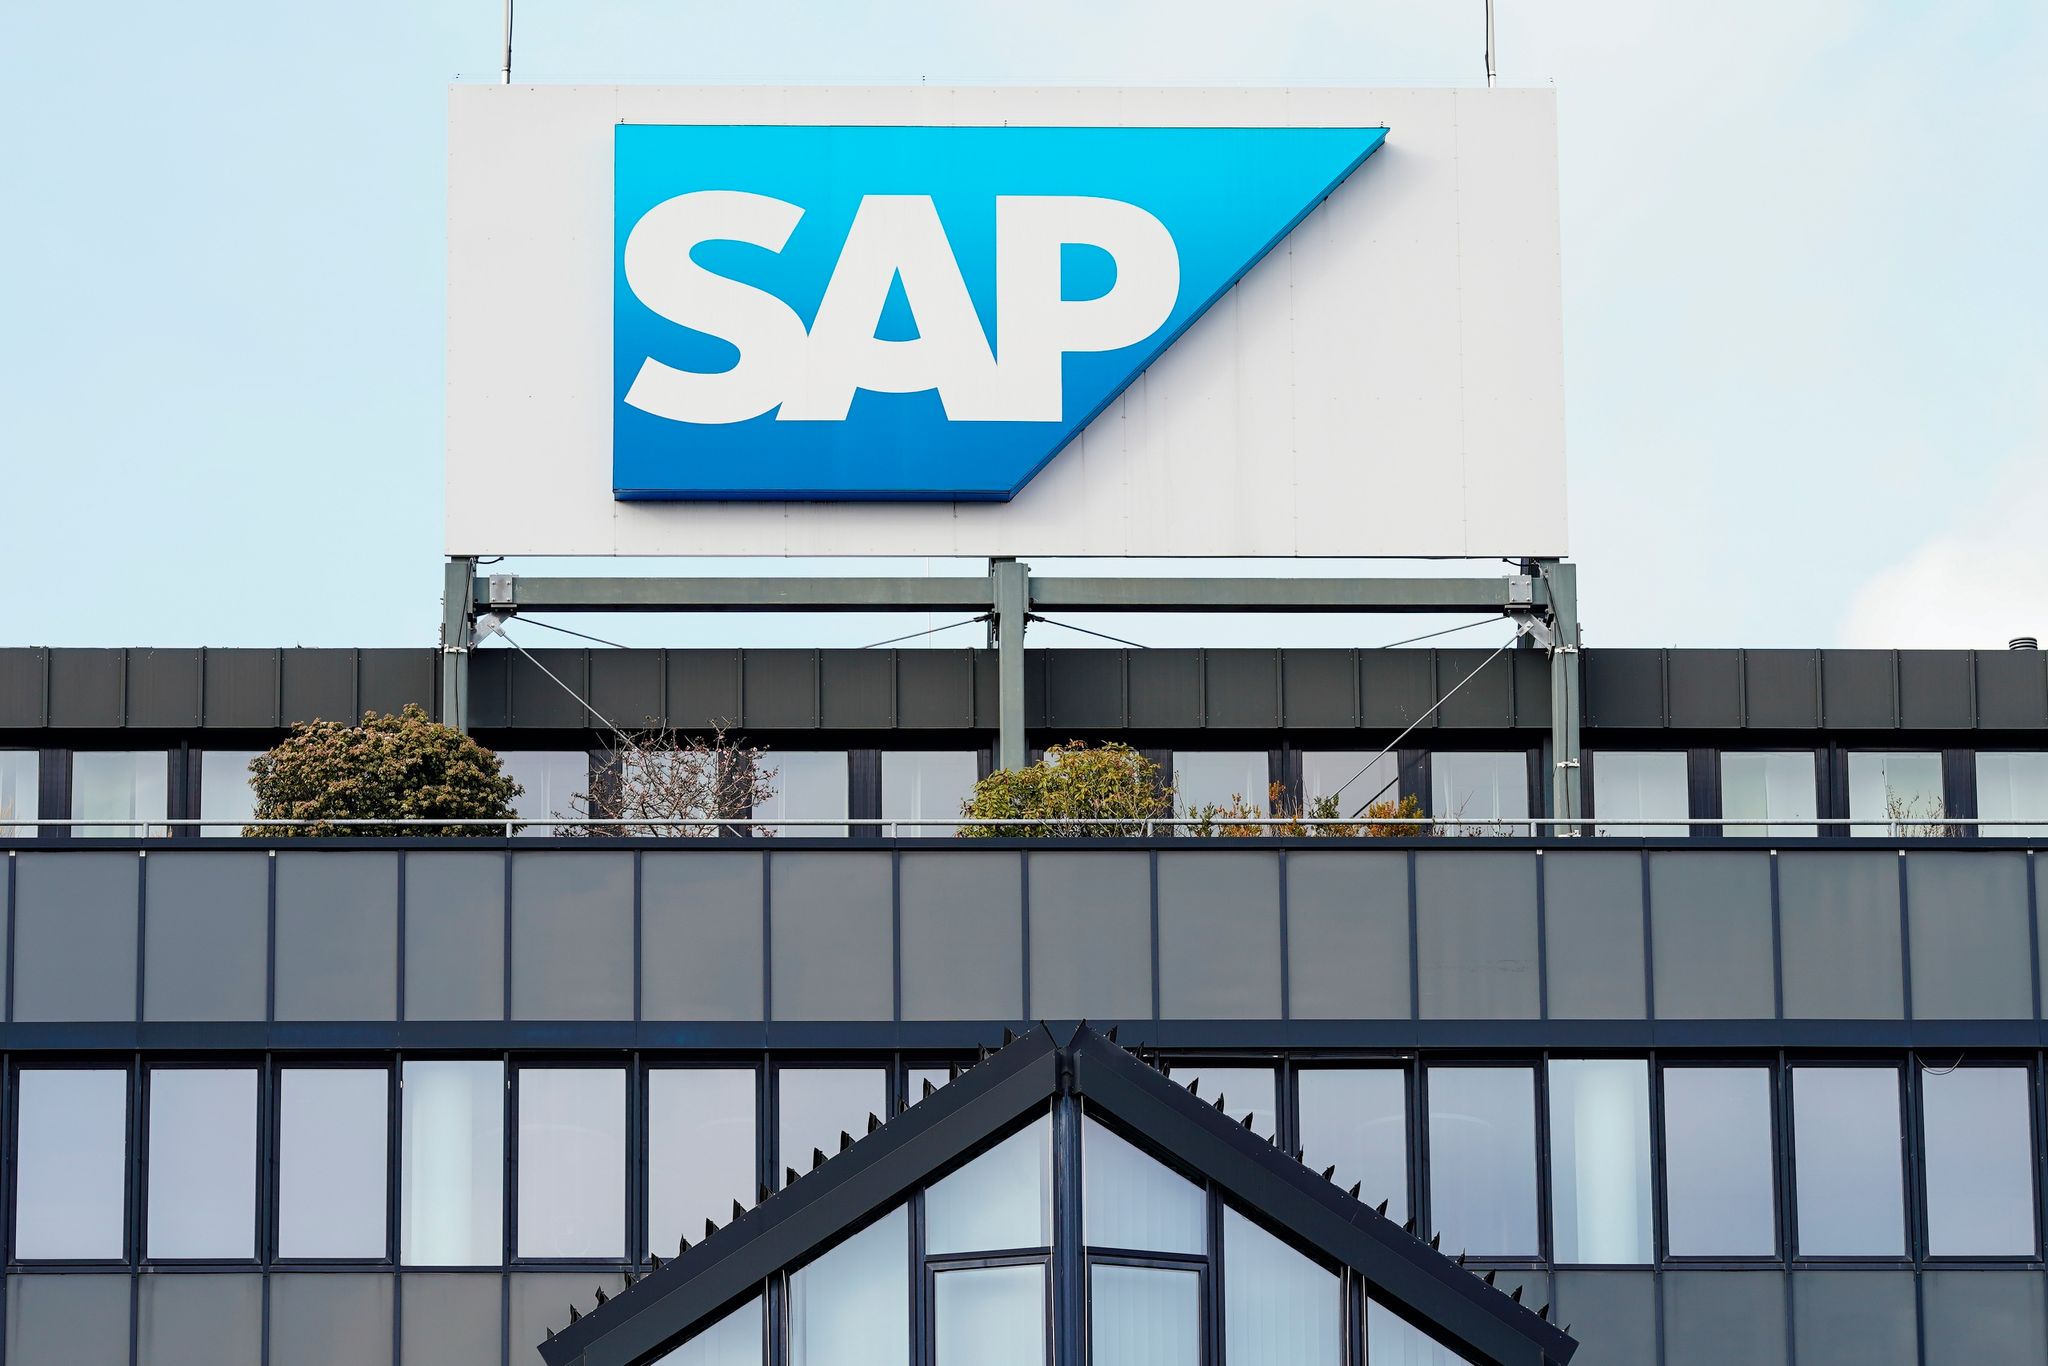 Der Softwarehersteller SAP hat es auf den 61. Platz der weltweit teuersten Unternehmen geschafft.